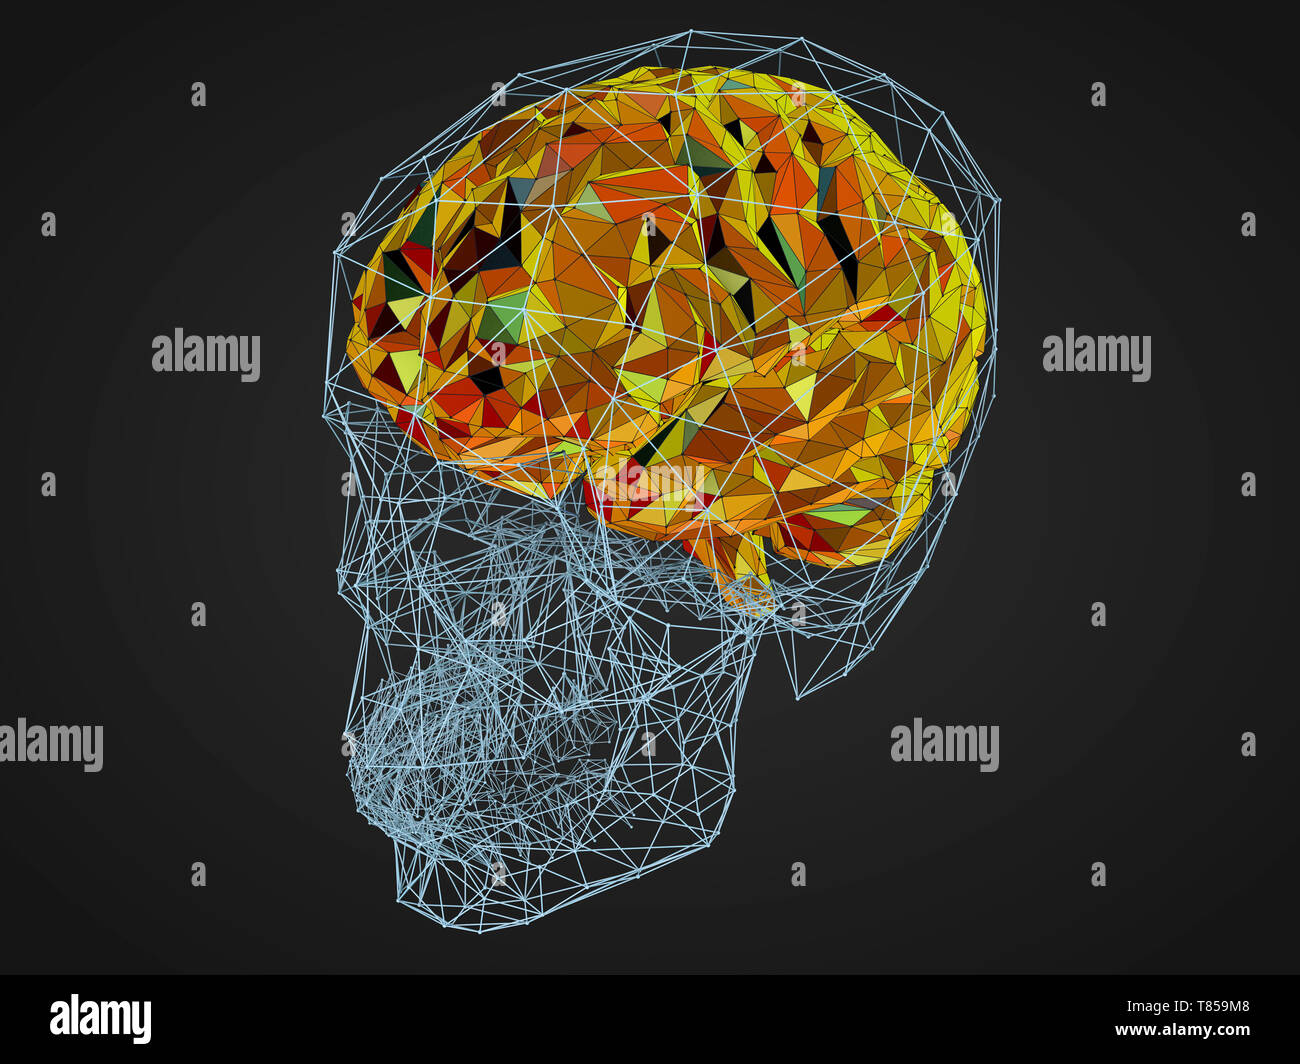 Cerveau humain, illustration Banque D'Images